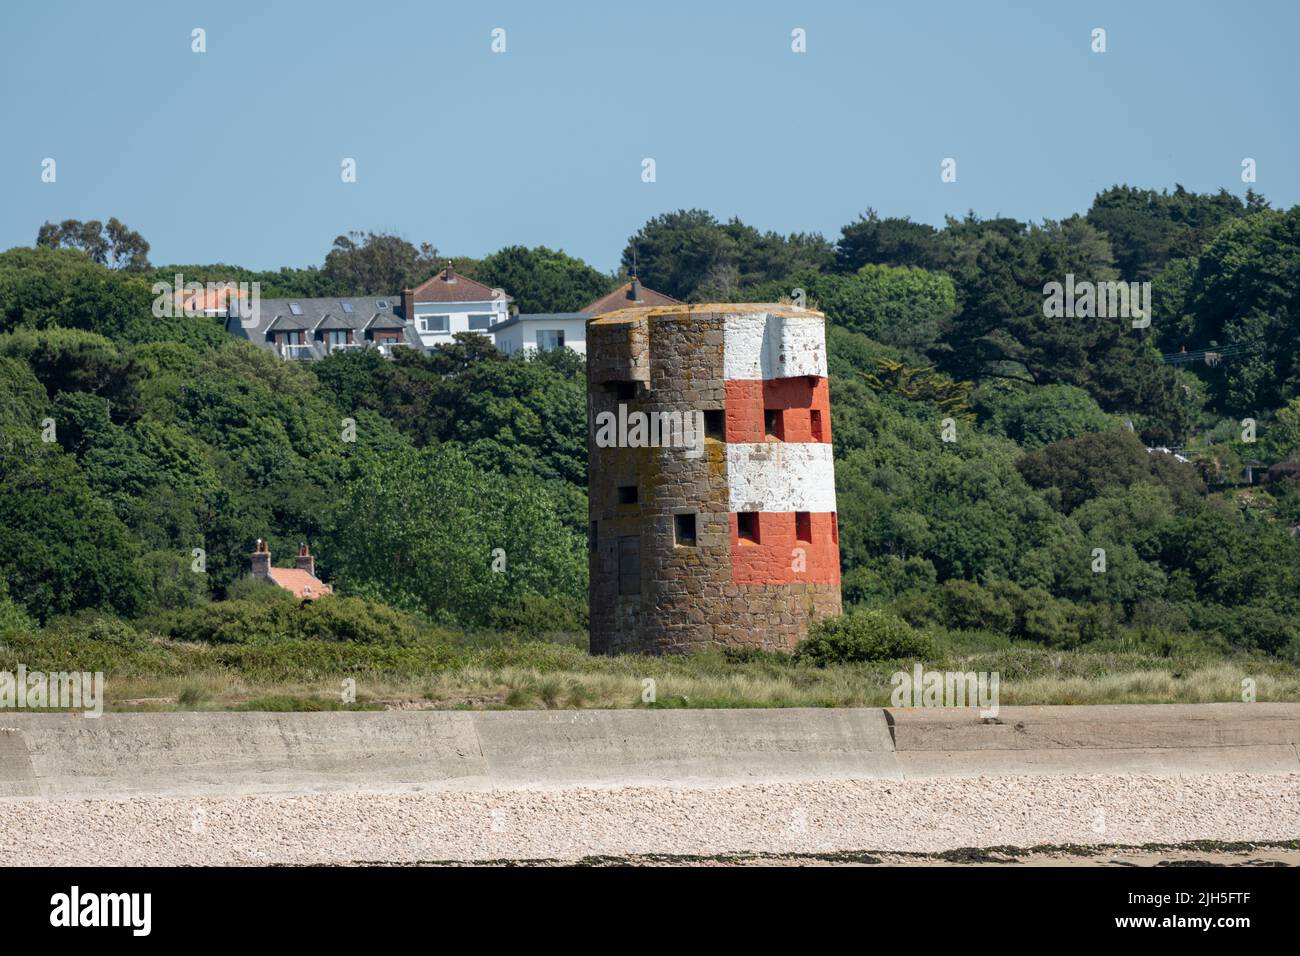 St Brelade's Bay WW2 torre di guardia sul promontorio di St Brelade nel sud-ovest della dipendenza della Corona britannica di Jersey, Isole del canale Foto Stock